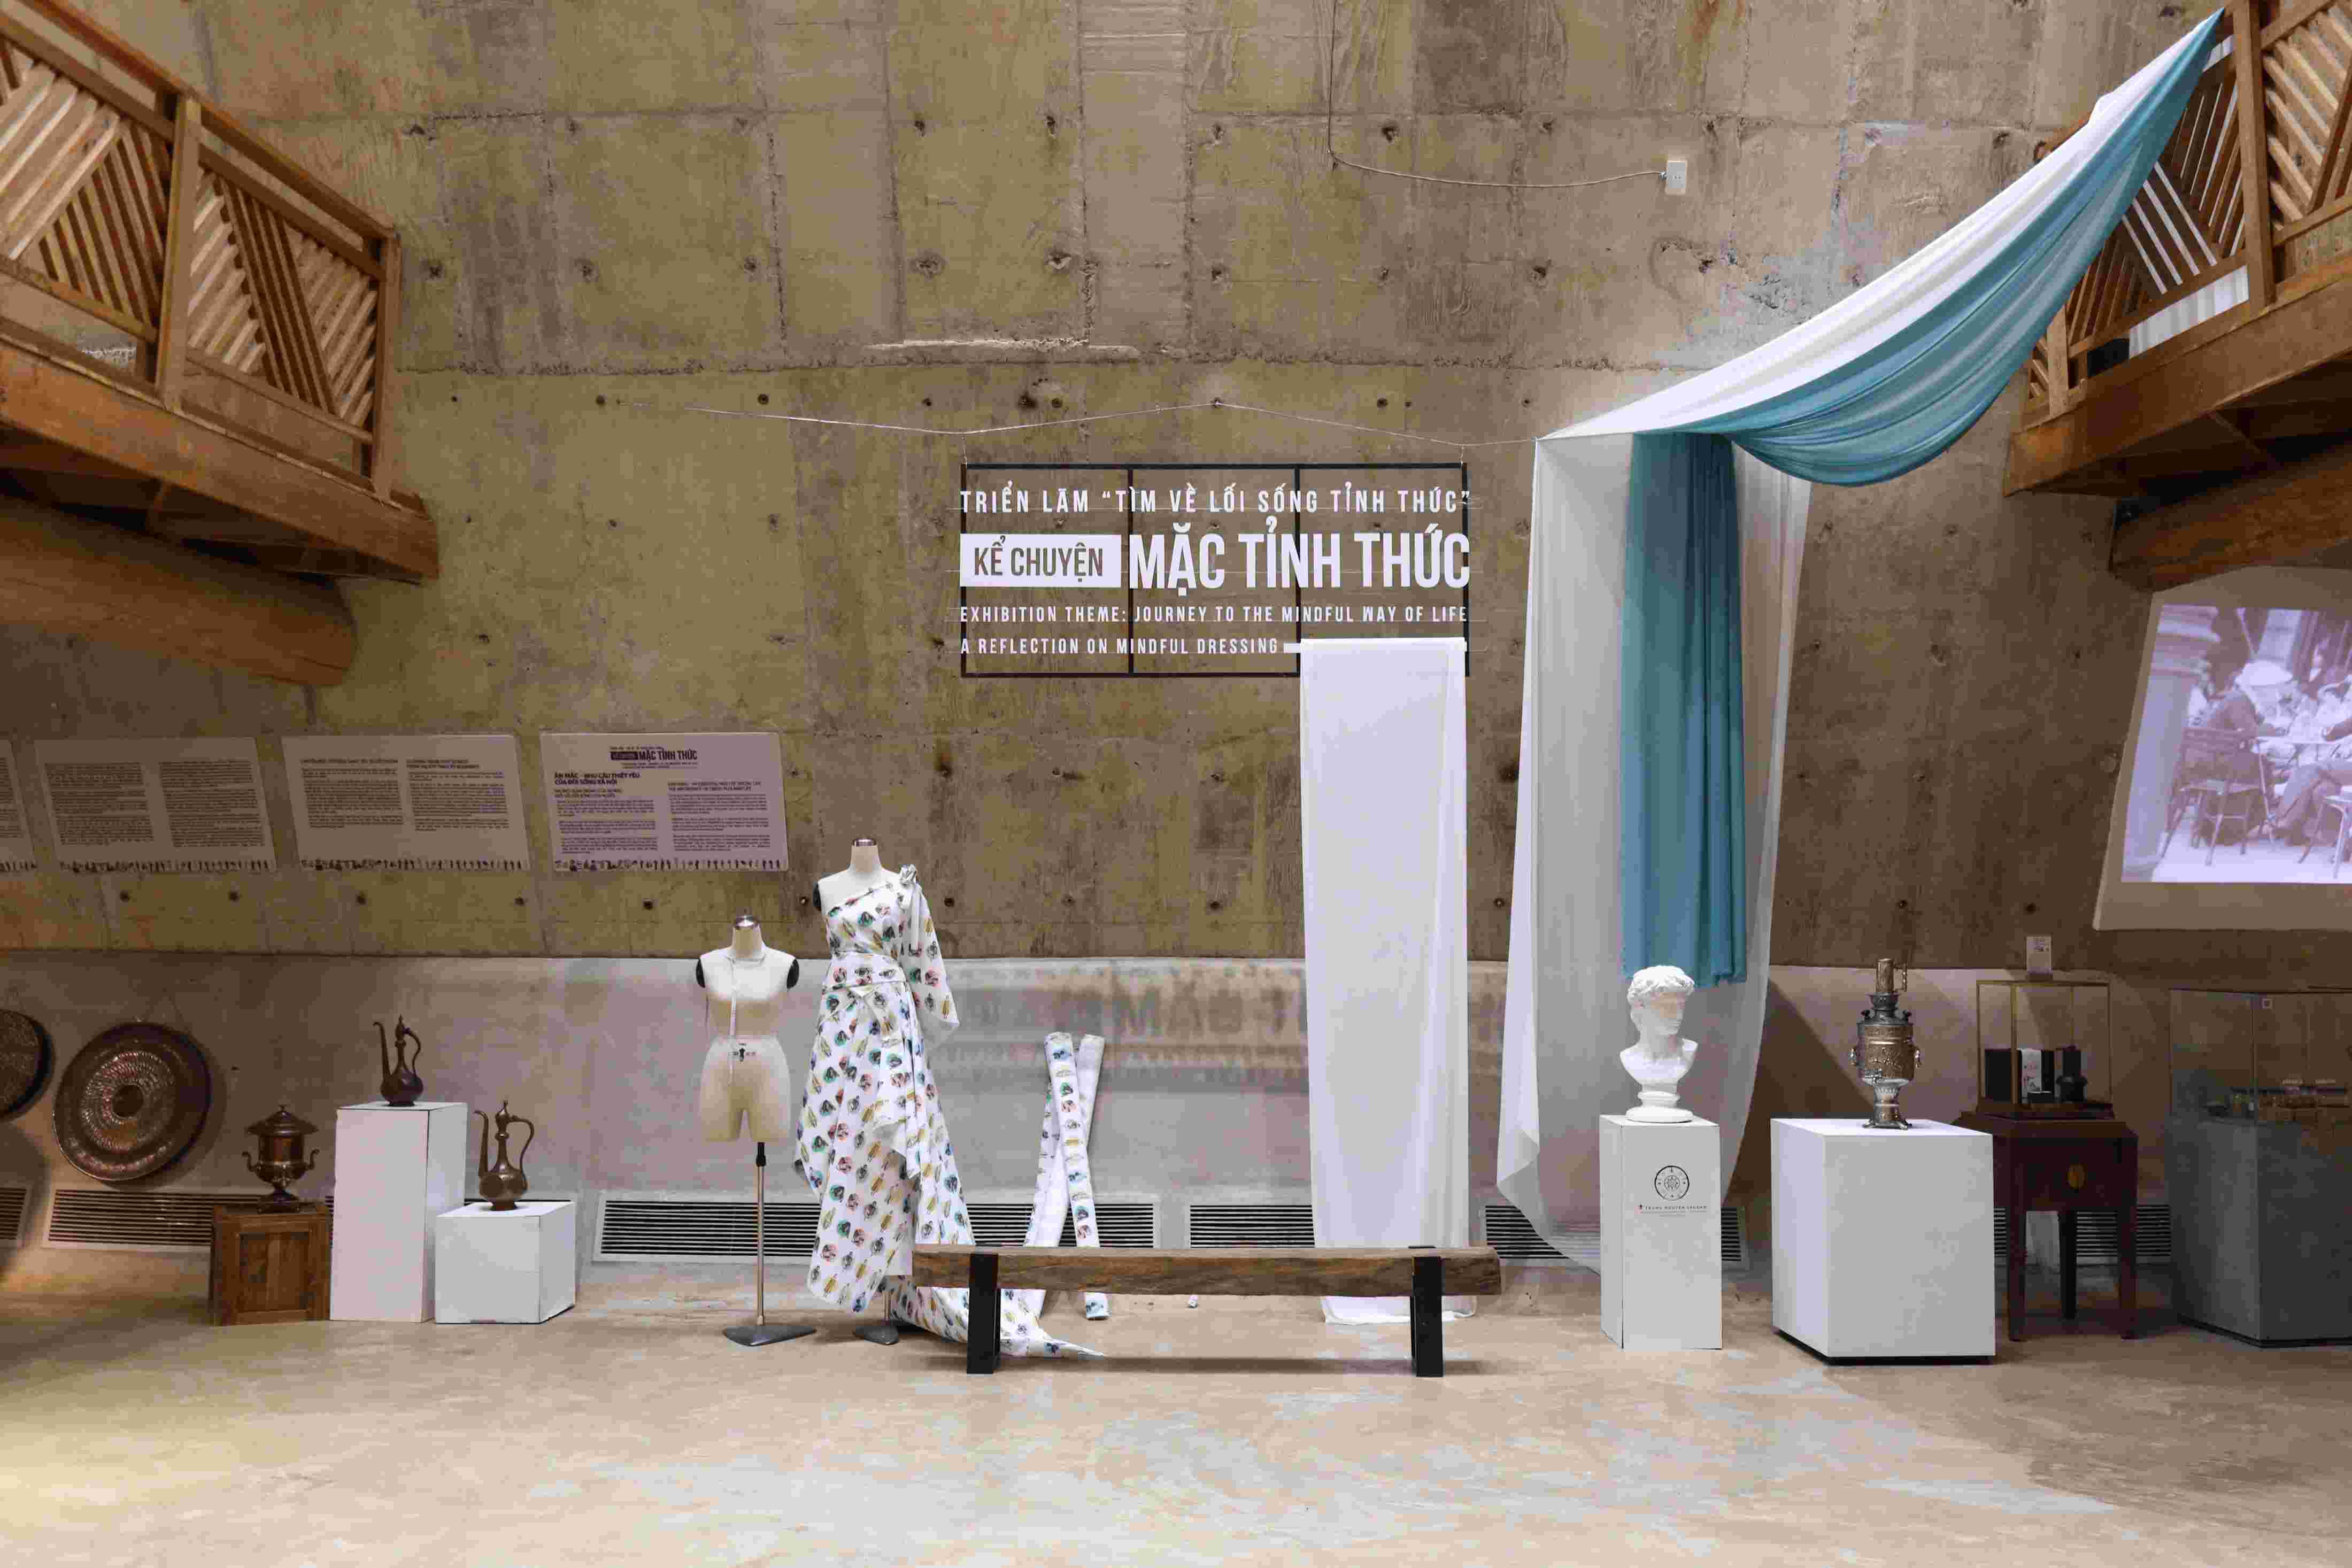 Triển lãm "Tìm về lối sống tỉnh thức-Kể chuyện mặc tỉnh thức" tại Bảo tàng Thế giới Cà phê